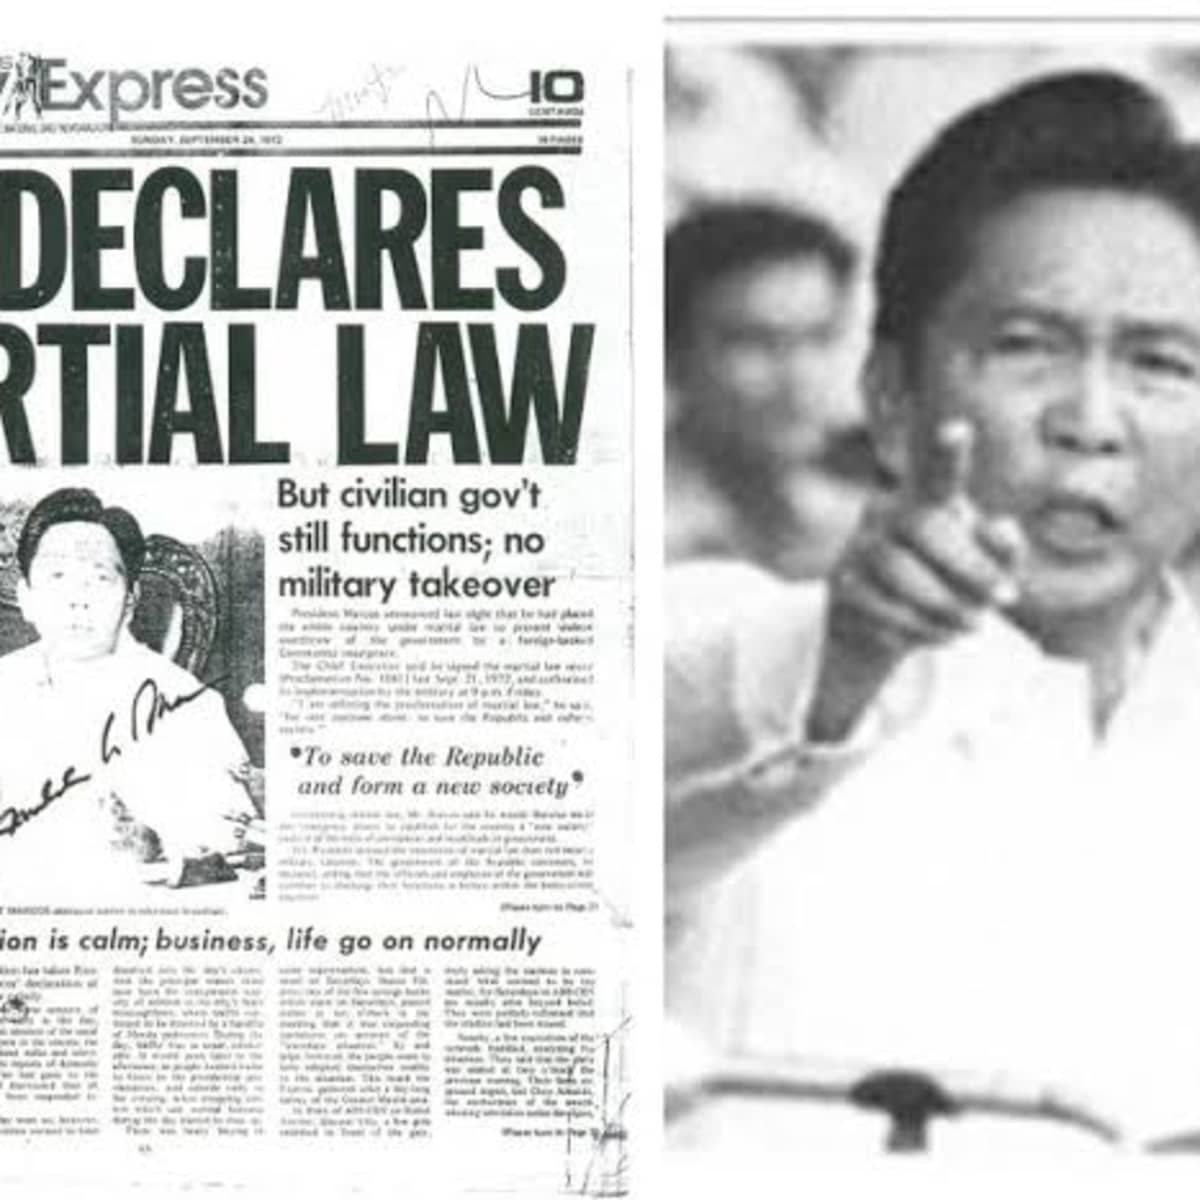 ferdinand marcos martial law declaration